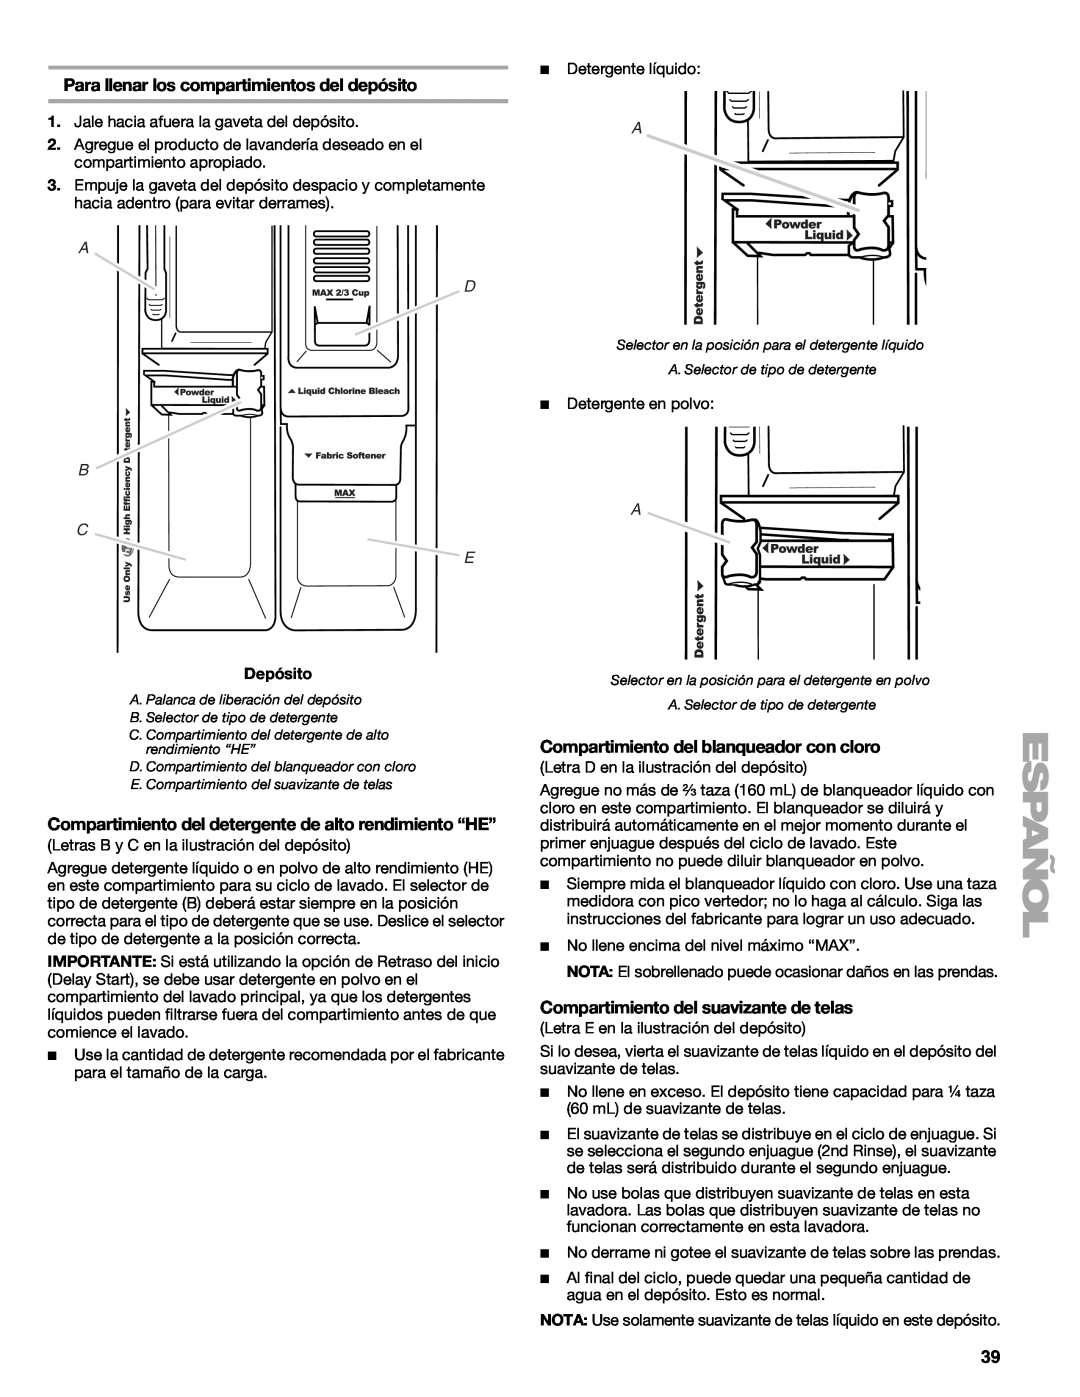 Kenmore W10133487A Para llenar los compartimientos del depósito, Compartimiento del detergente de alto rendimiento “HE” 